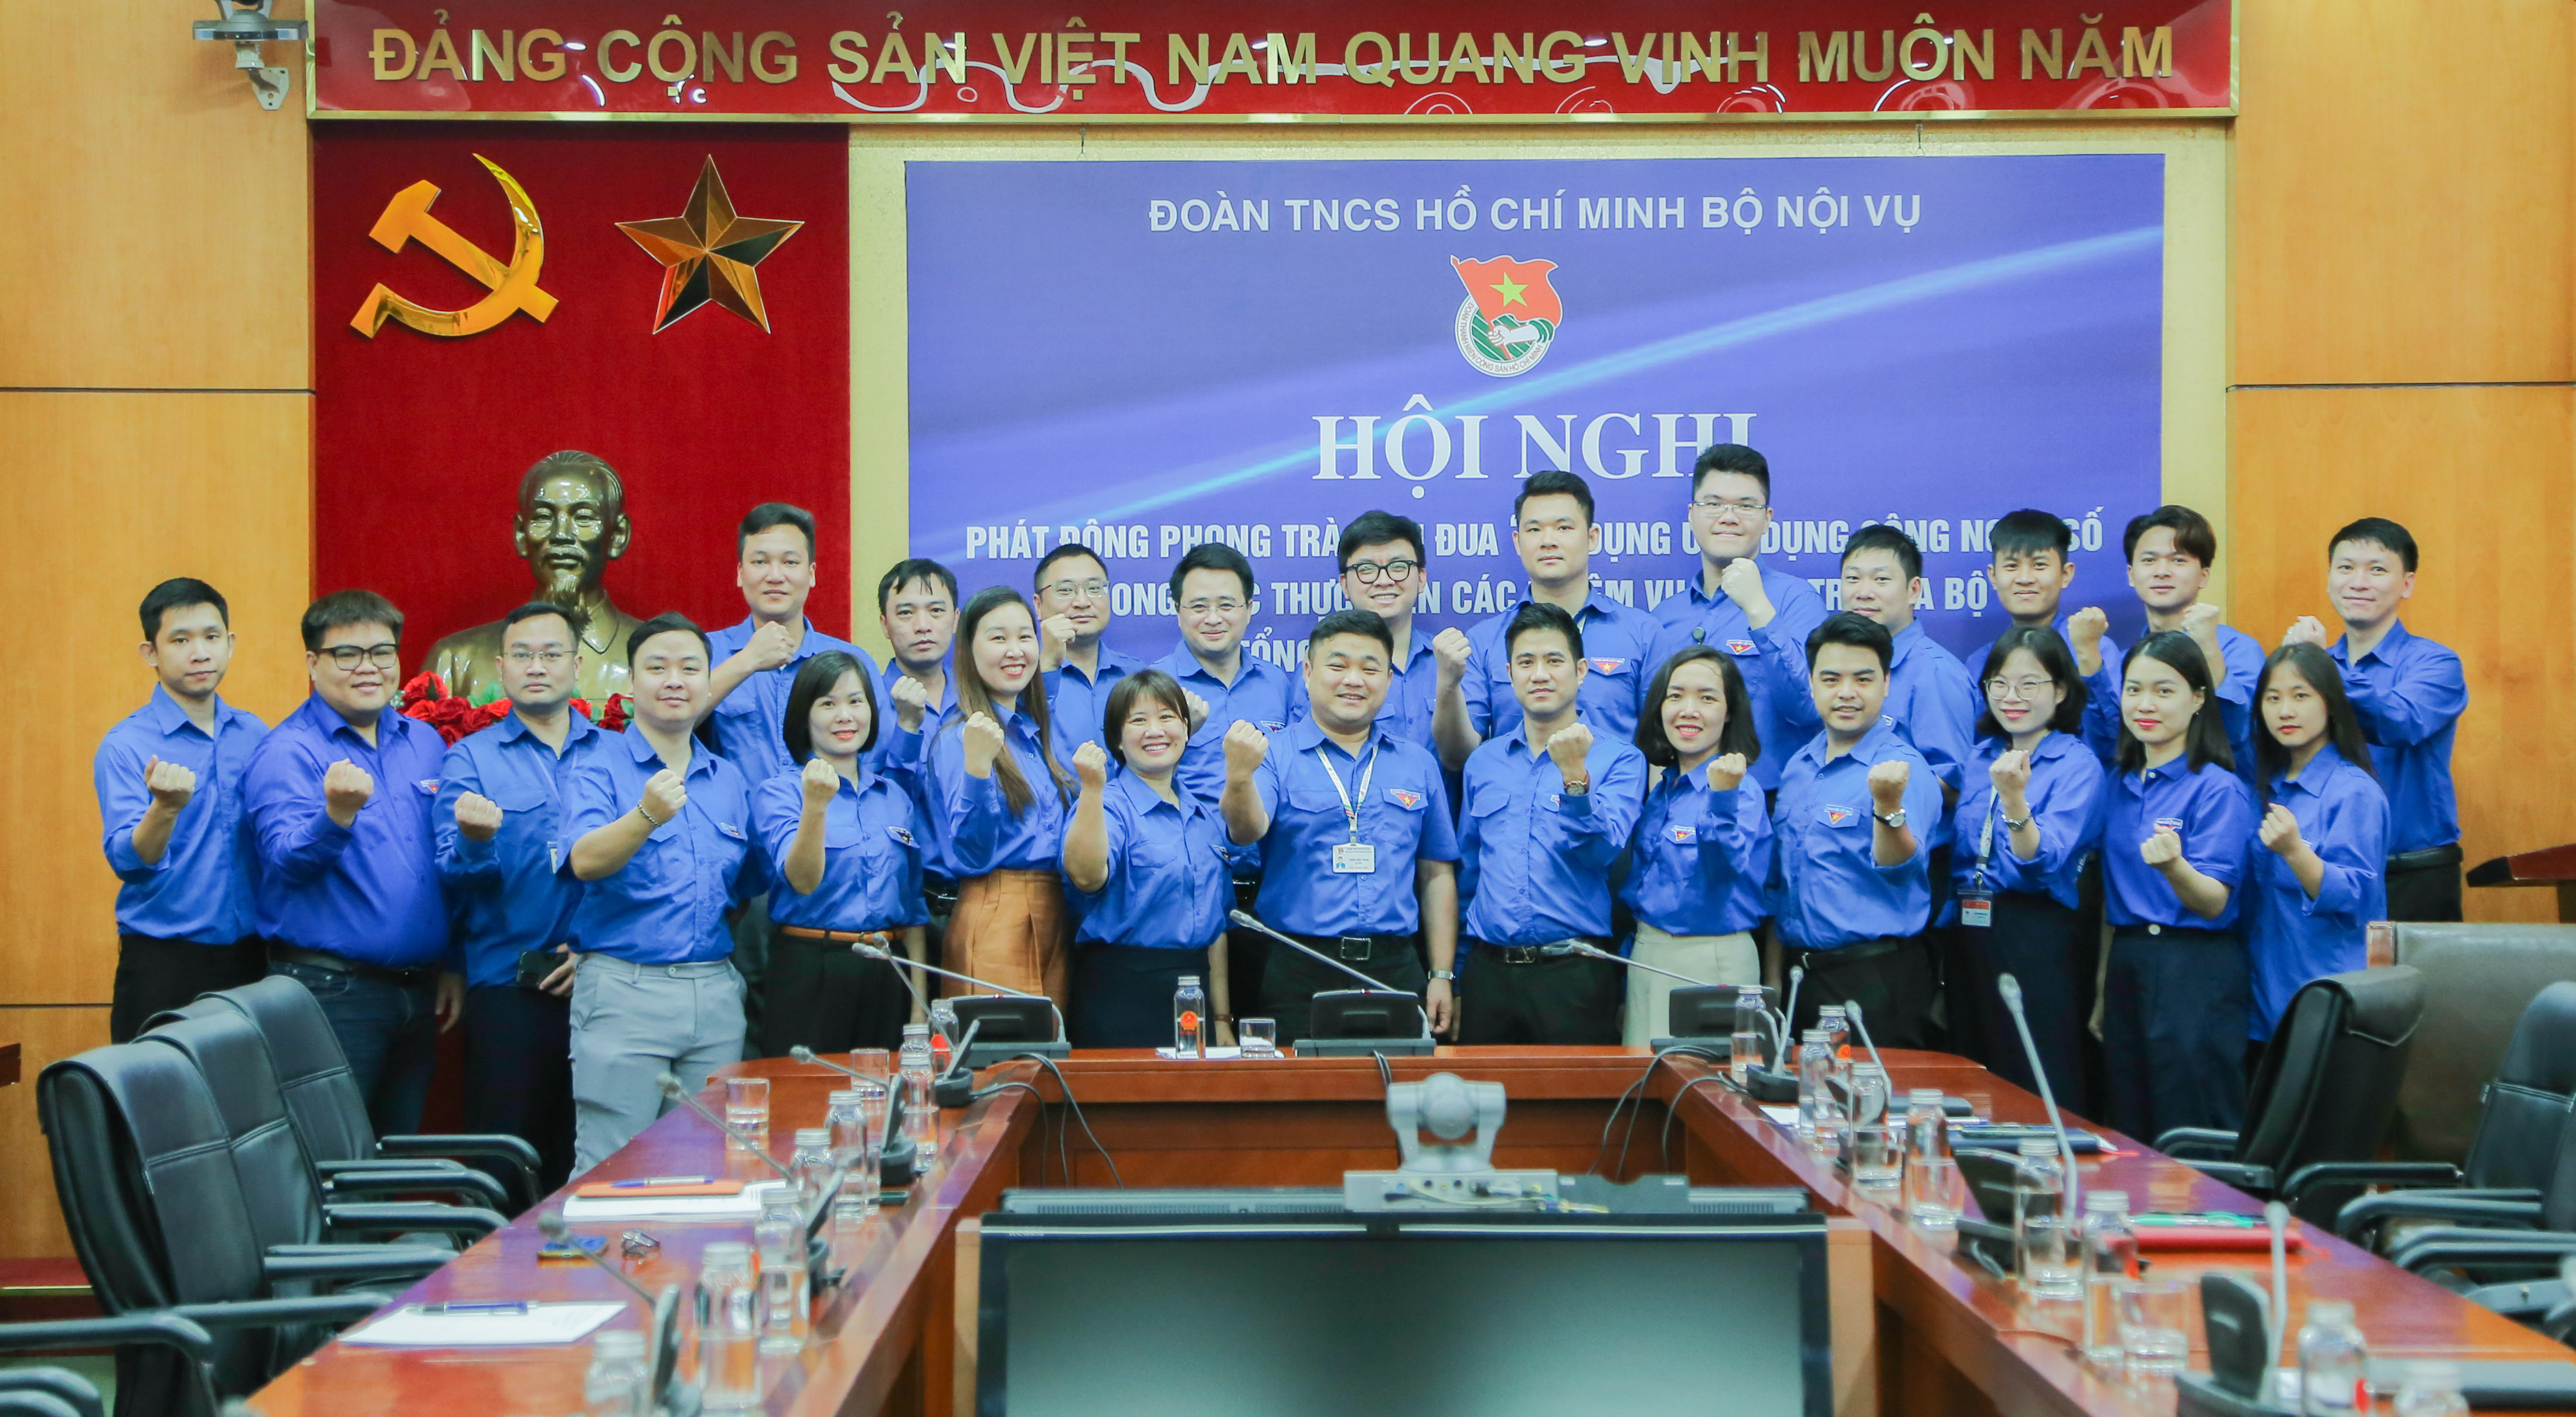 Đoàn TNCS Hồ Chí Minh Bộ Nội vụ: Phát động phong trào thi đua “Áp dụng ứng dụng công nghệ số trong việc thực hiện các nhiệm vụ chính trị của Bộ”